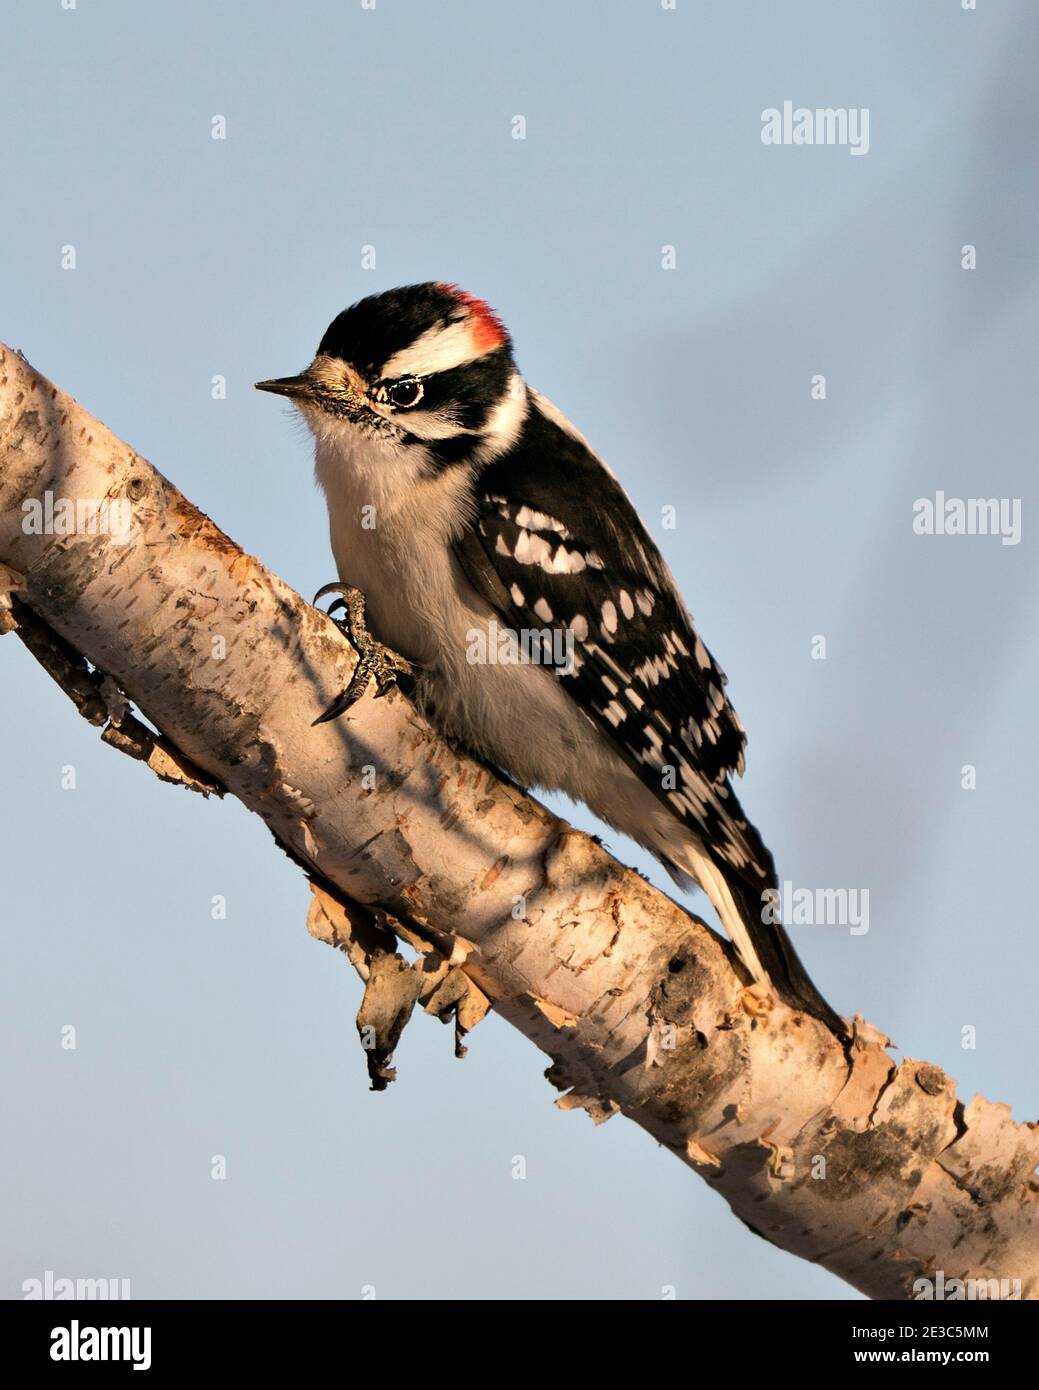 Woodpecker appollaiato con piumaggio di piume di colore bianco e nero, nel suo ambiente e habitat nella foresta con uno sfondo sfocato. Immagine. Foto Stock